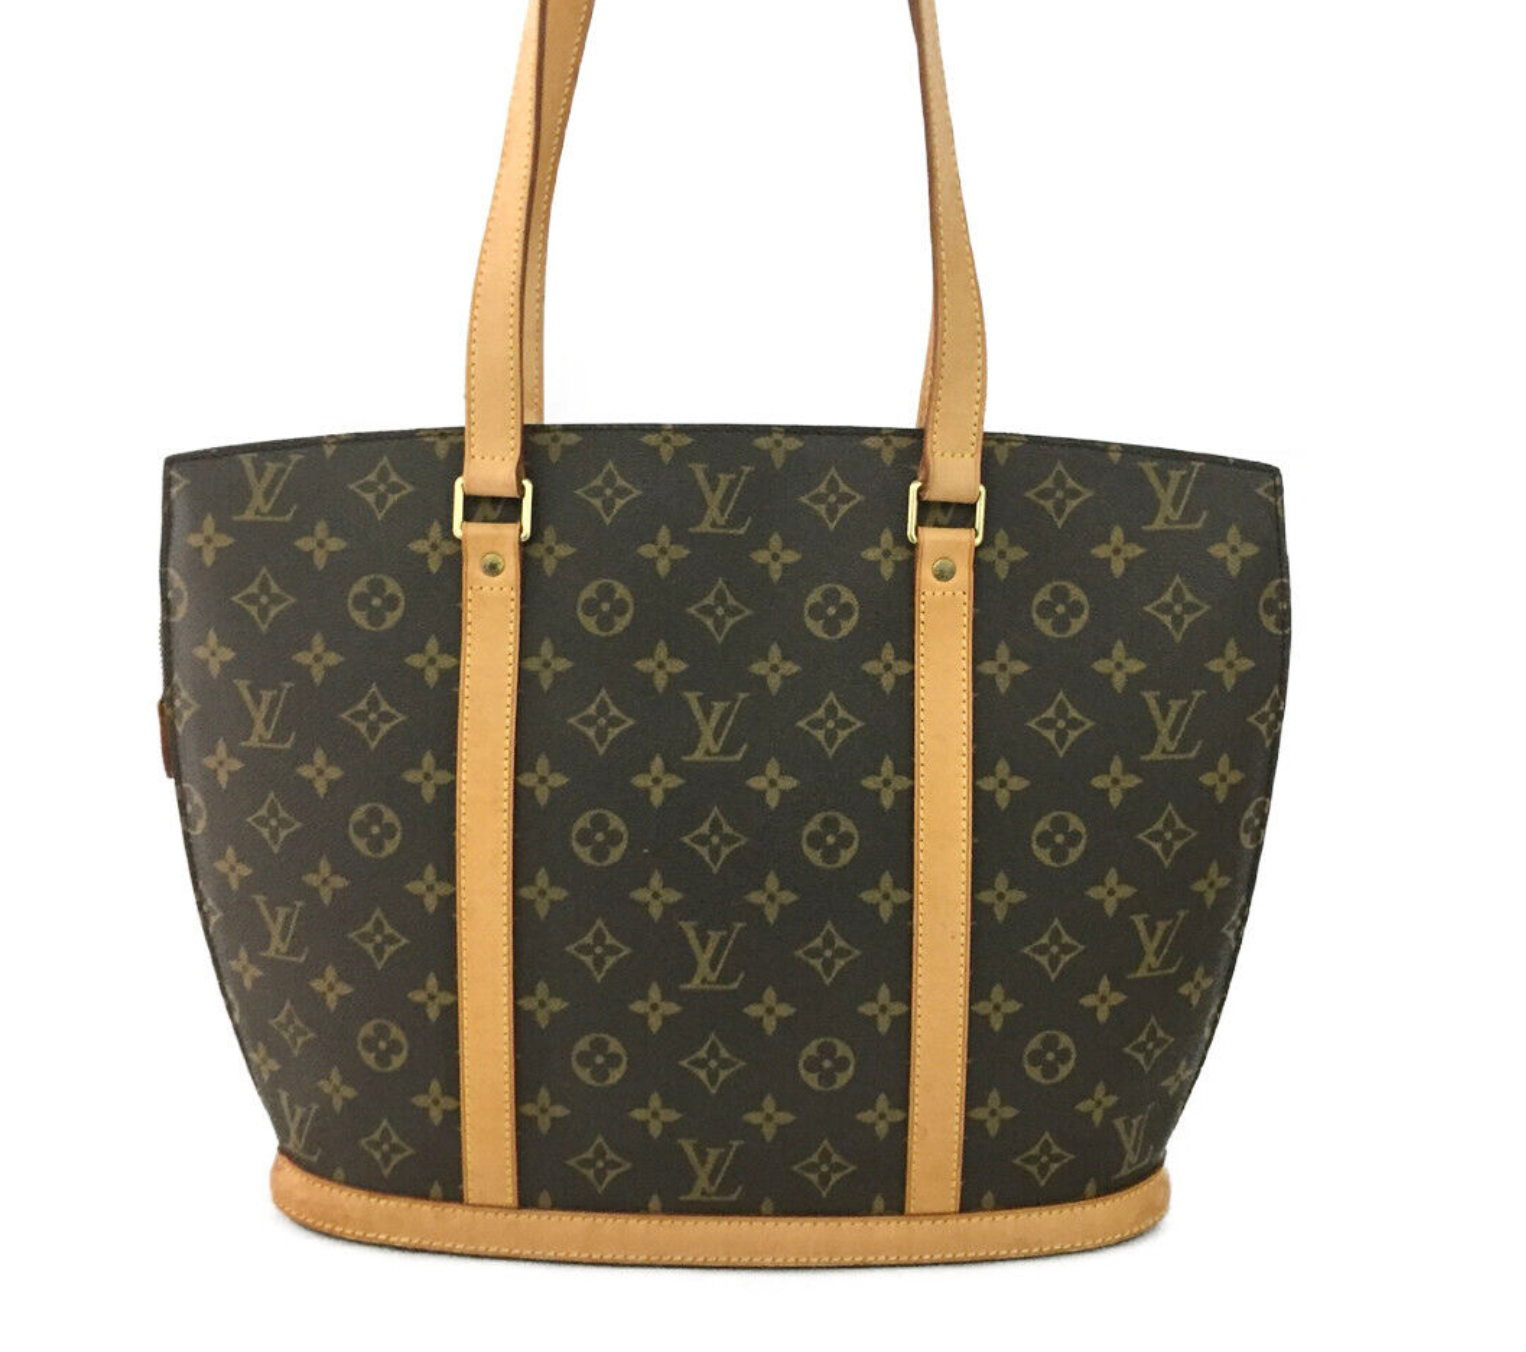 Louis Vuitton Babylone bag - Still in fashion